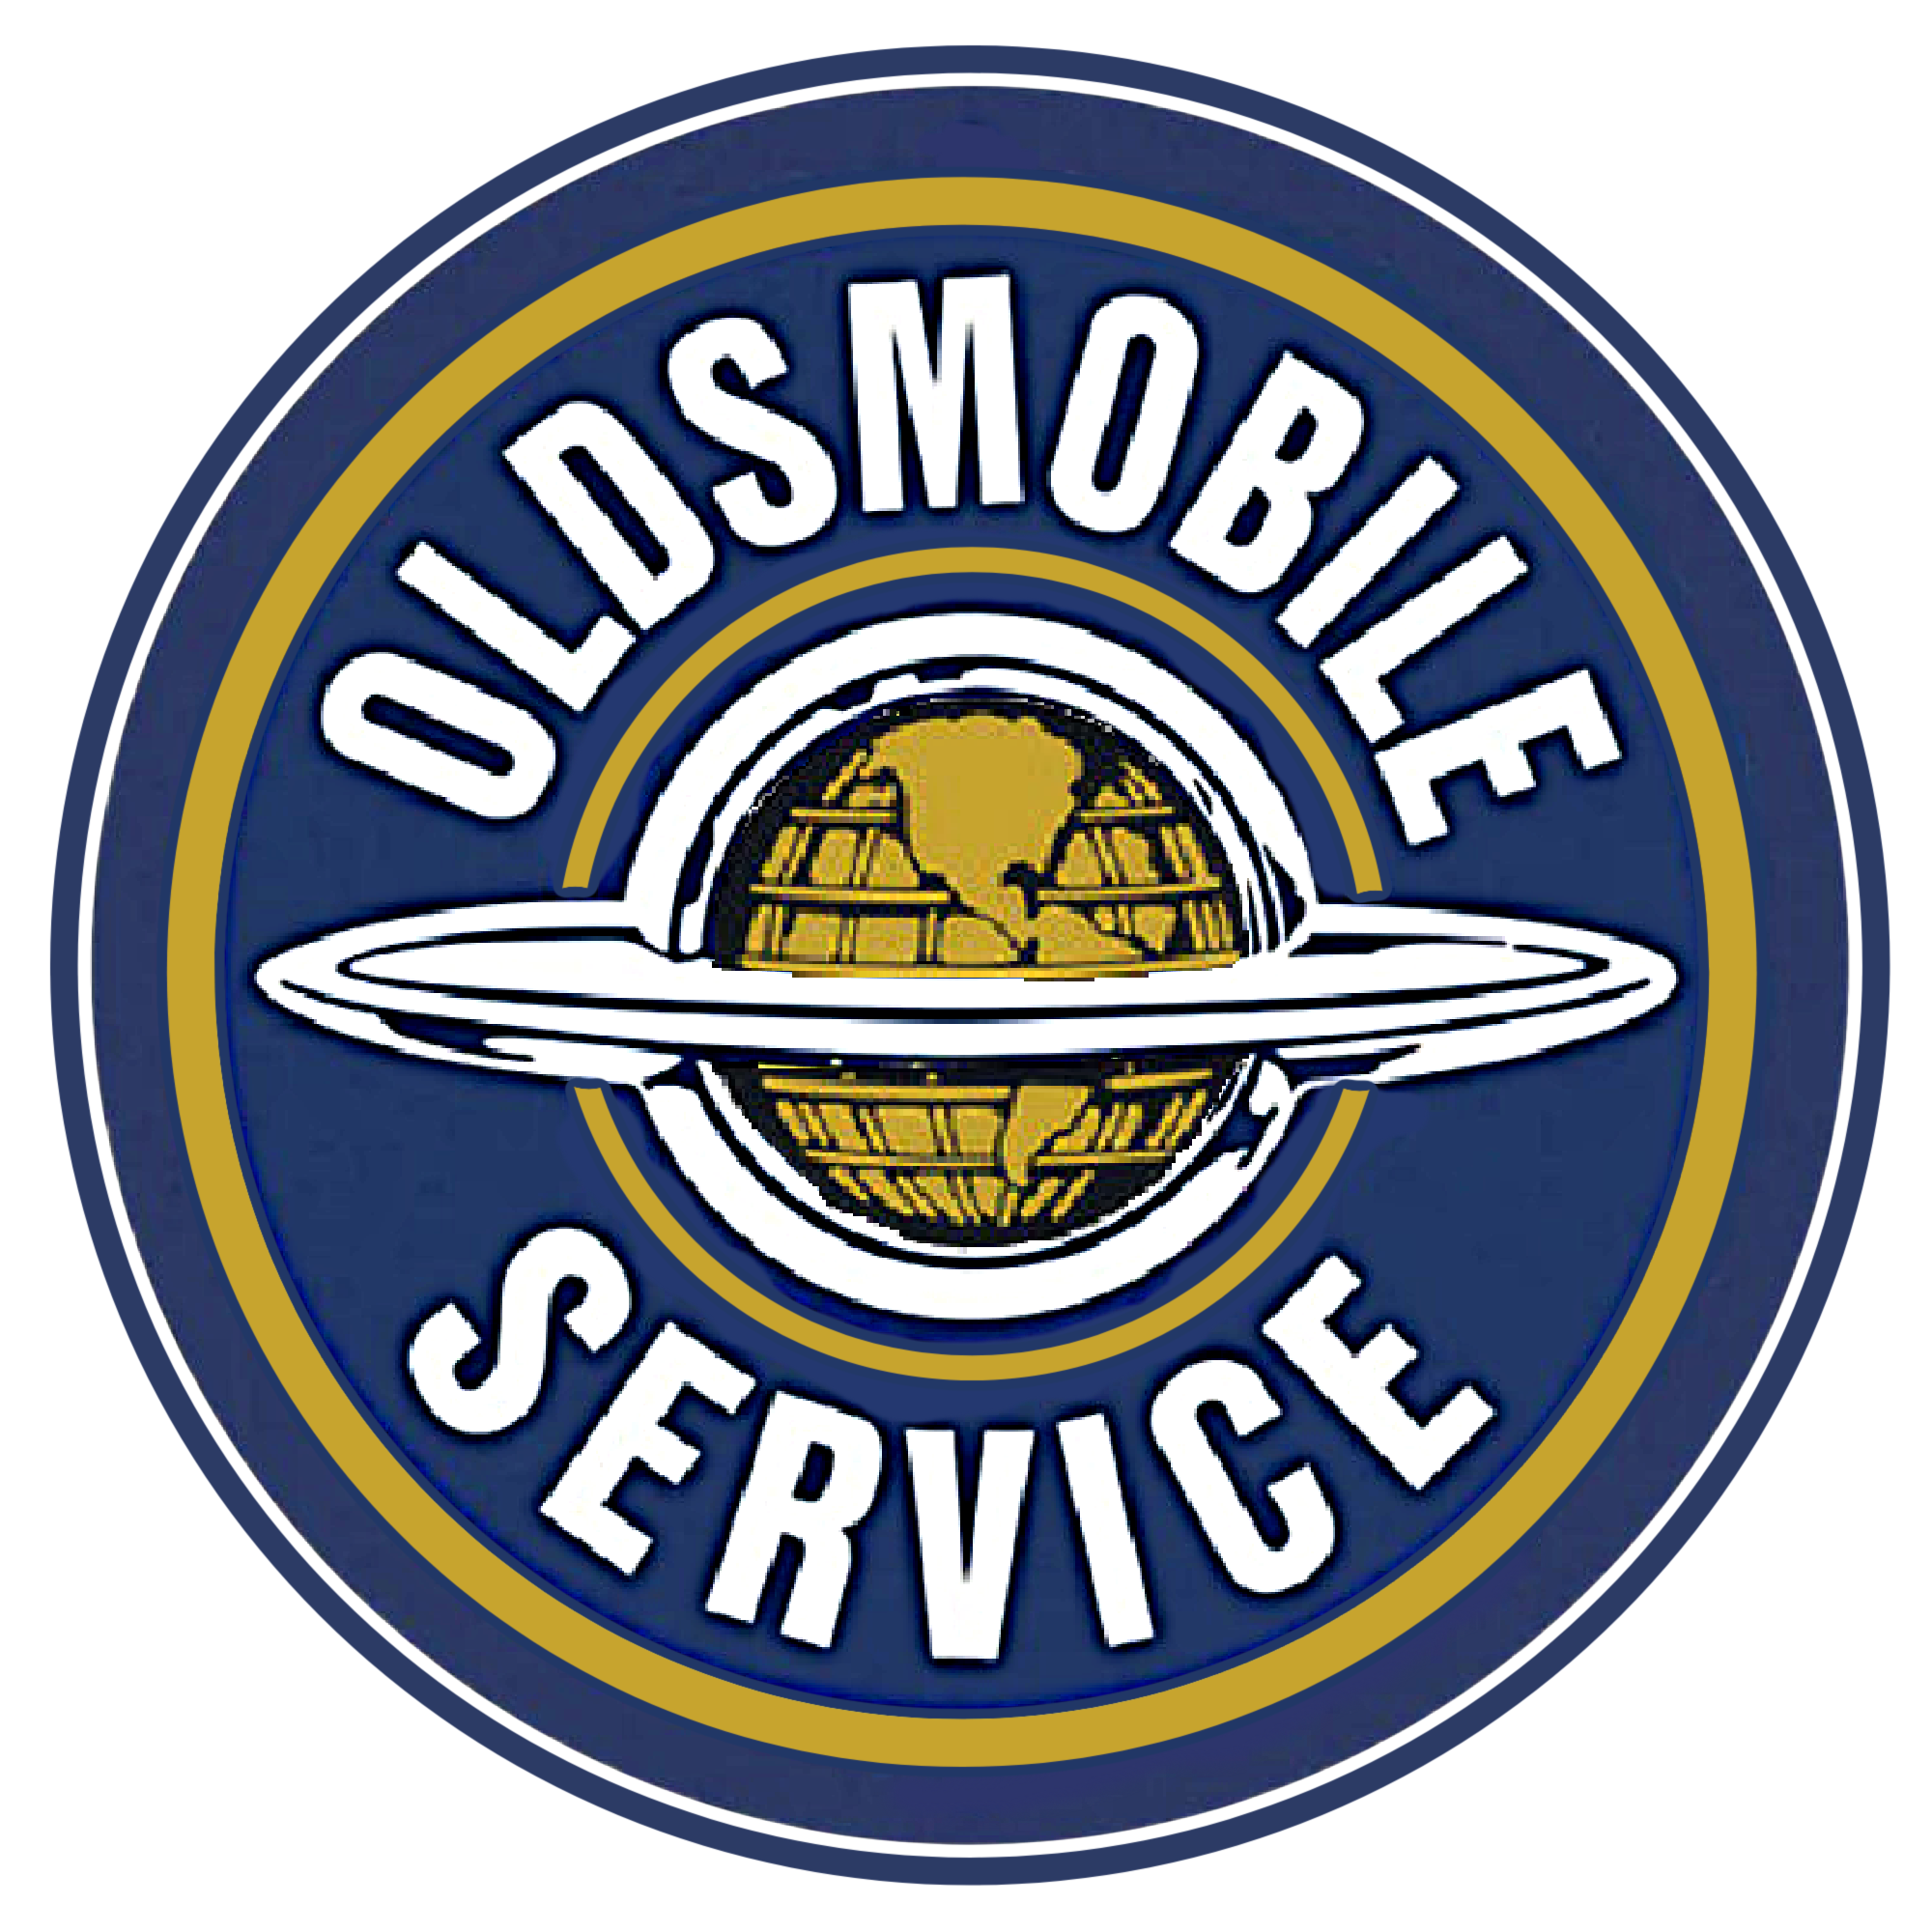 Oldsmobile Service Vintage Sign - Image